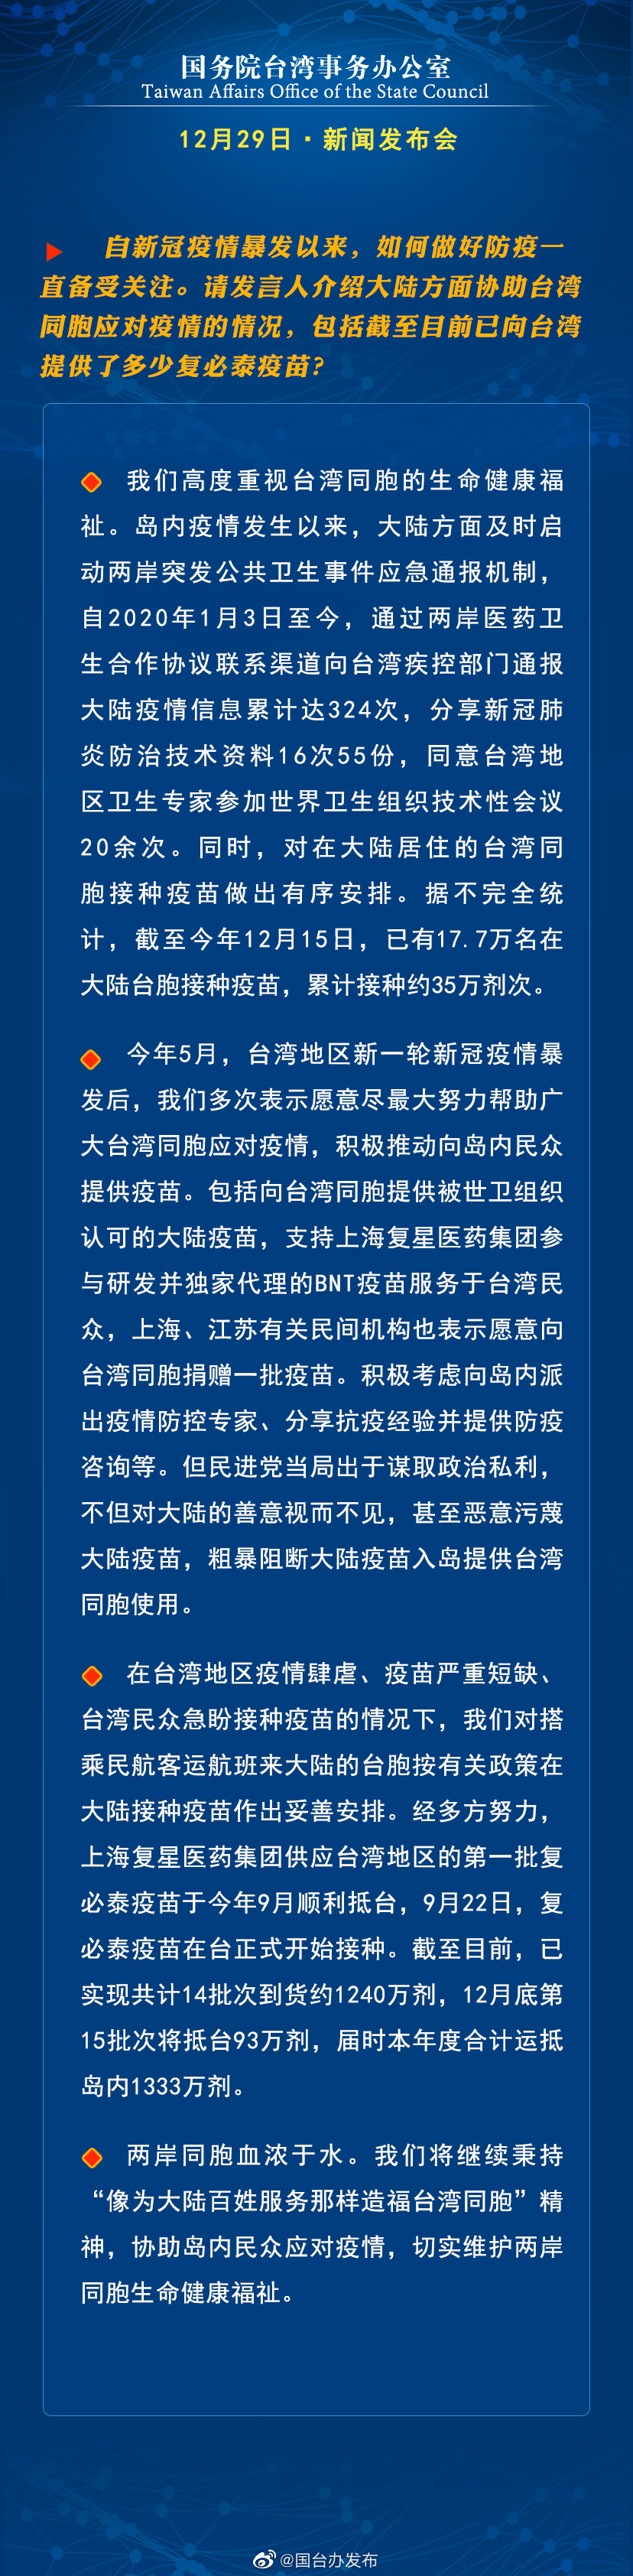 国务院台湾事务办公室12月29日·新闻发布会